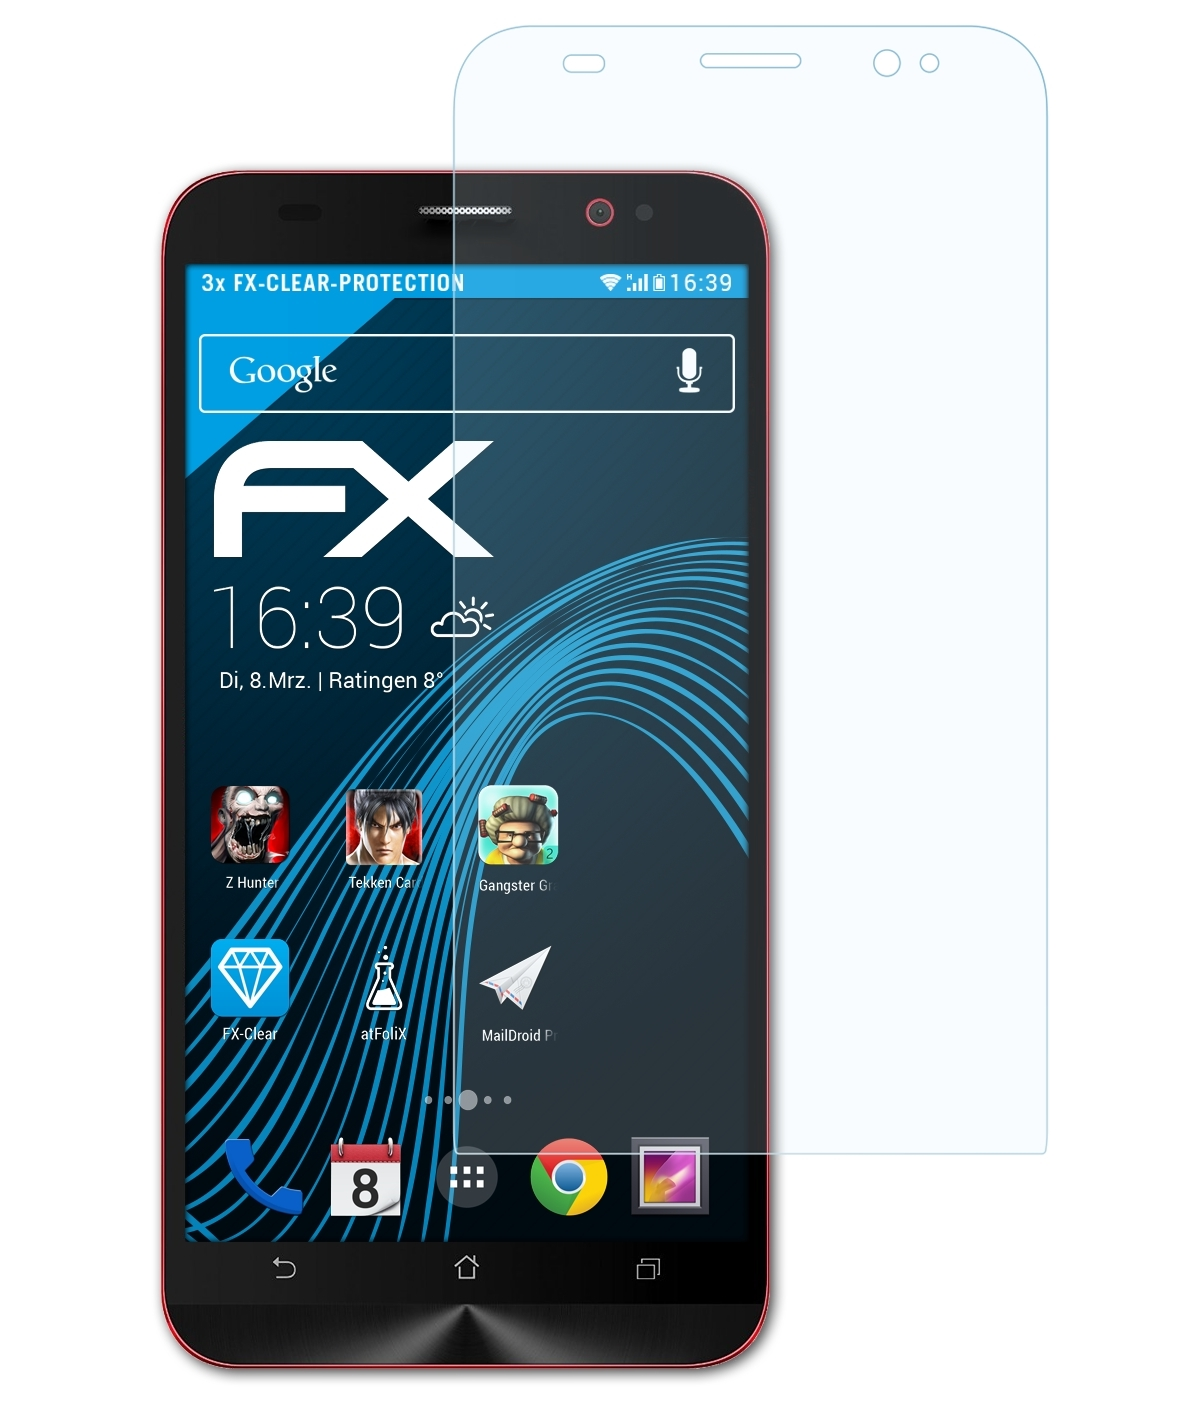 3x 2 Deluxe FX-Clear (ZE550ML/551ML)) ZenFone Displayschutz(für Asus ATFOLIX